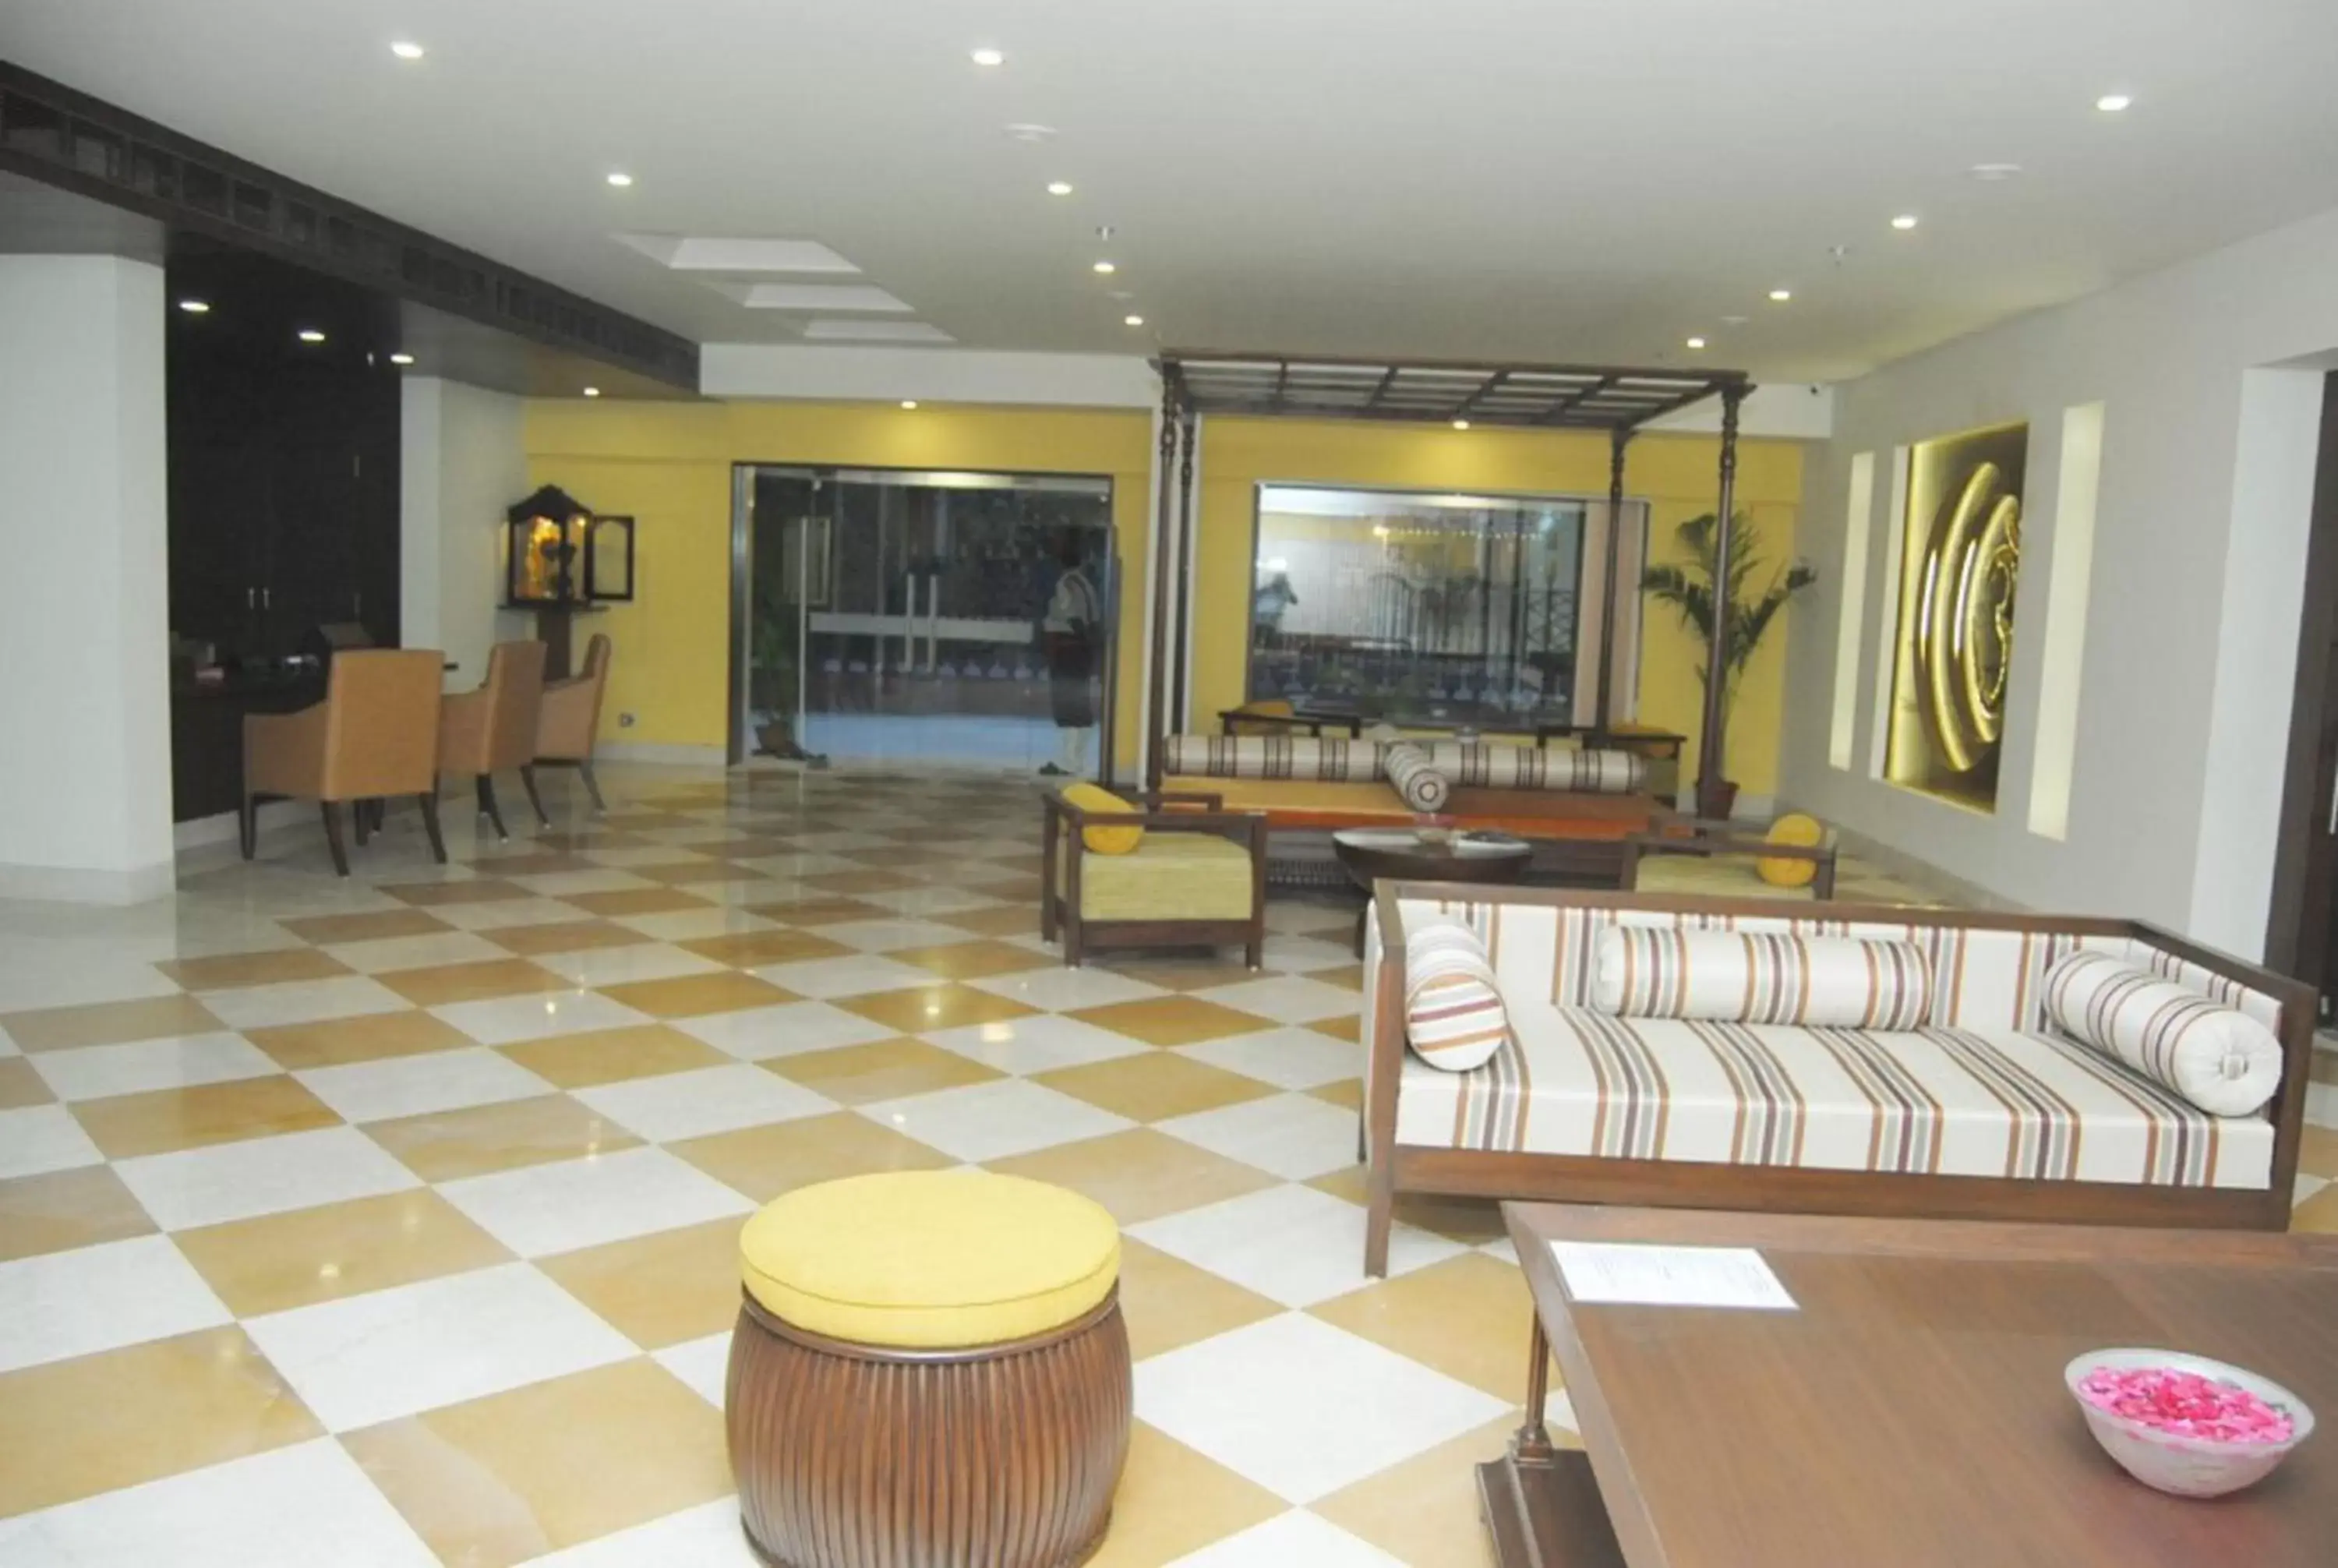 Area and facilities, Lobby/Reception in Hotel Abigail Goradia's